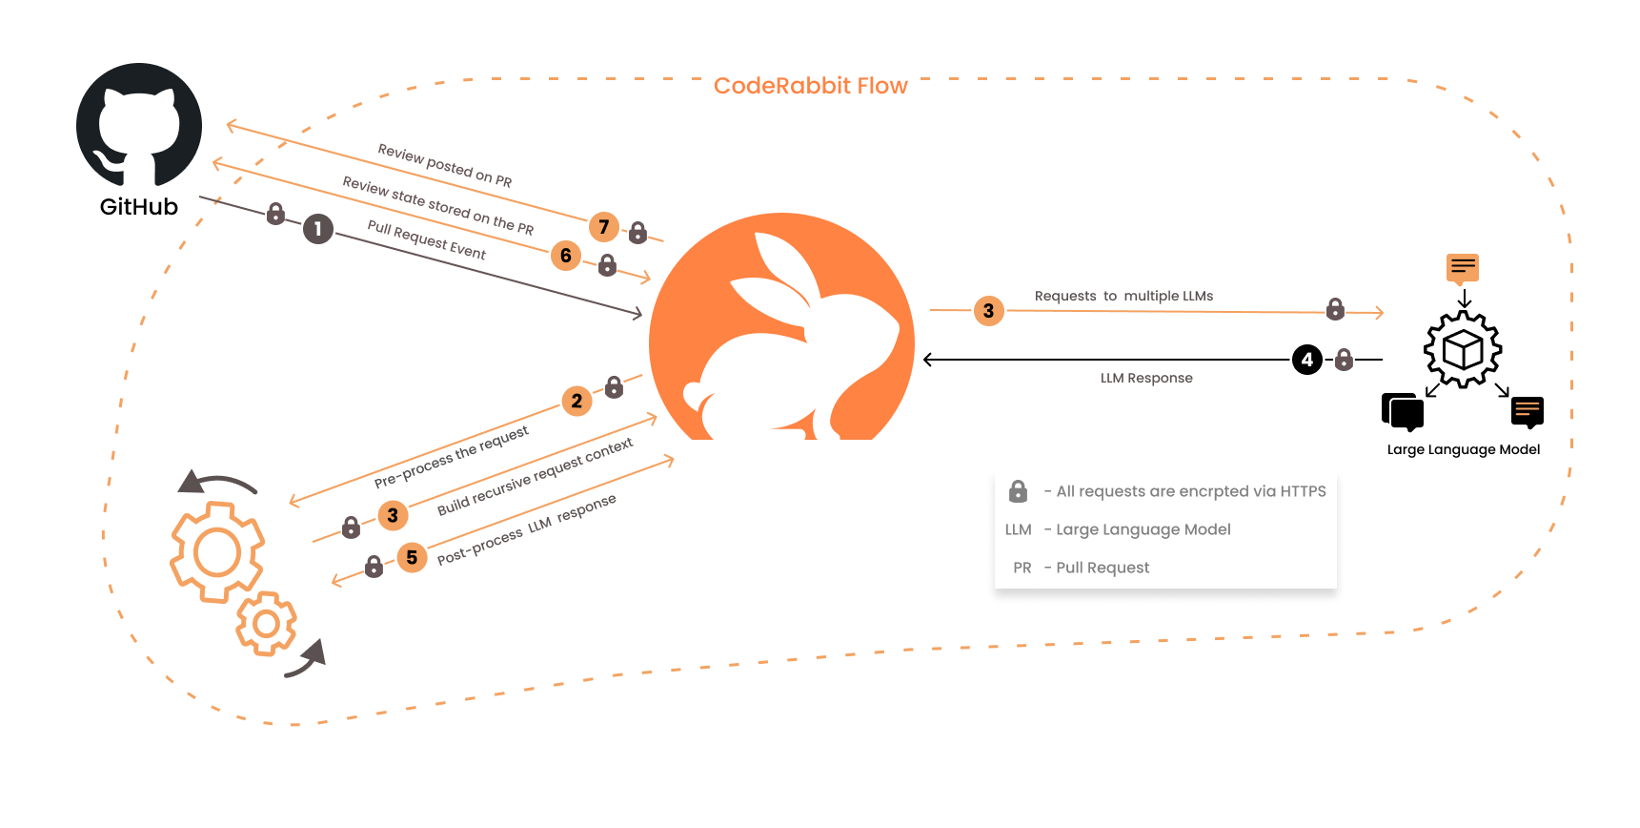 CodeRabbit Flow